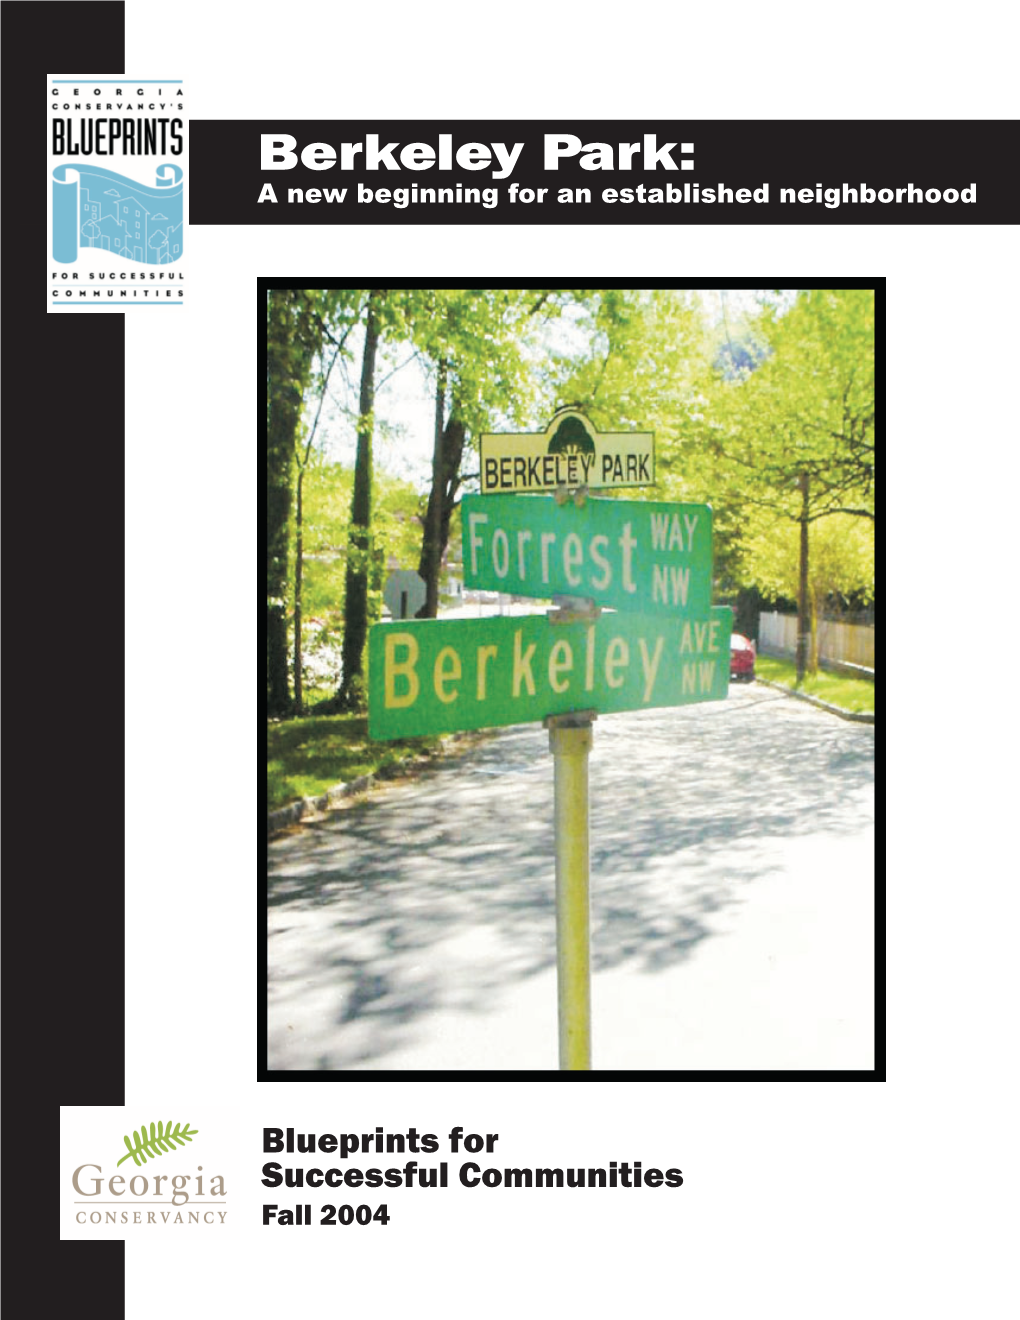 Berkeley Park: a New Beginning for an Established Neighborhood